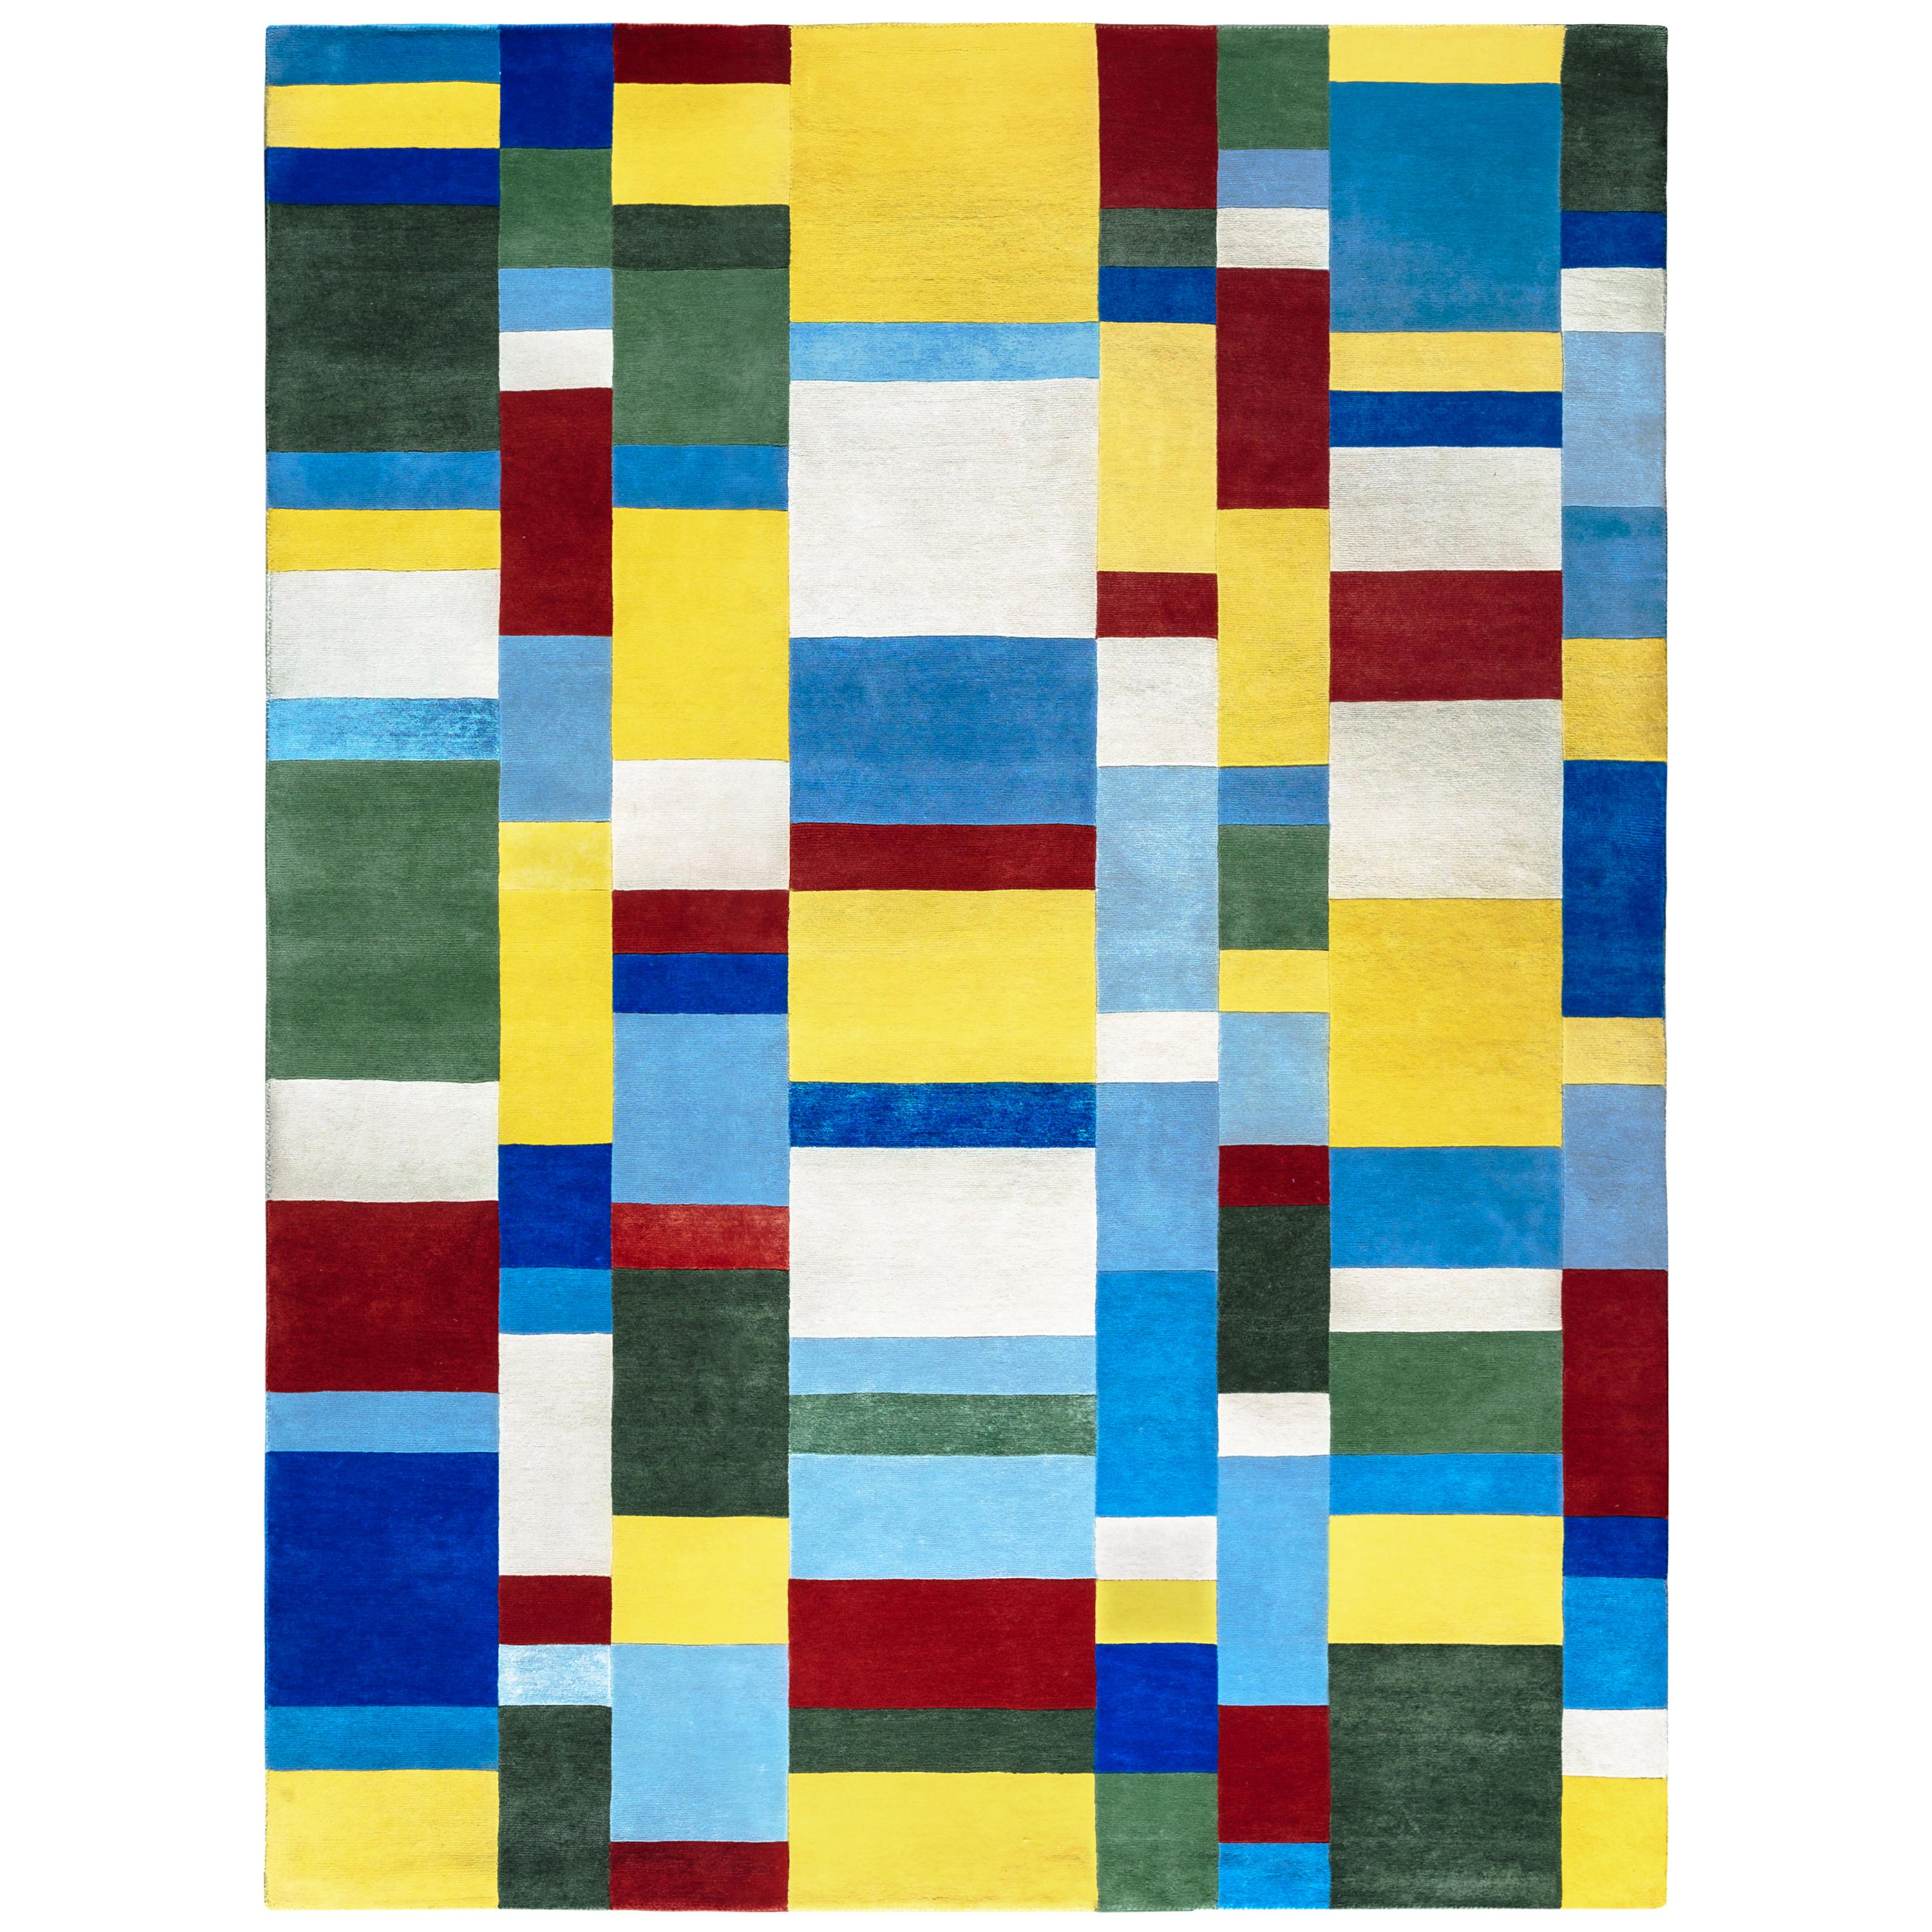 Limited Edition Tapestry/Rug "Los Colores Del Español" by J. Zanella